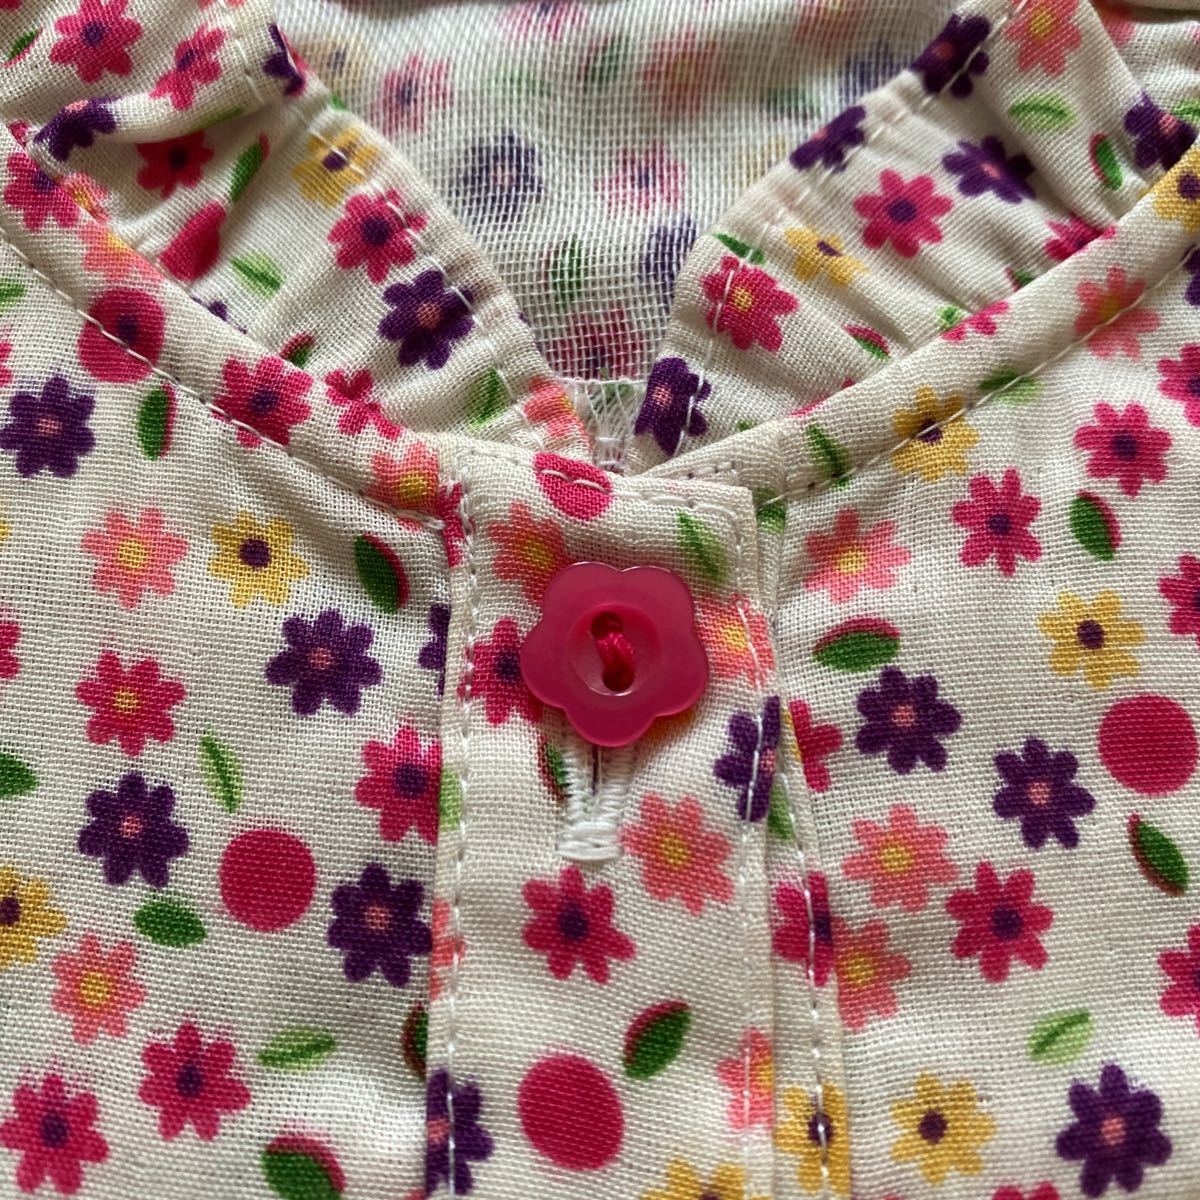  быстрое решение новый товар Miki House длинный рукав блуза 100 цветочный принт 